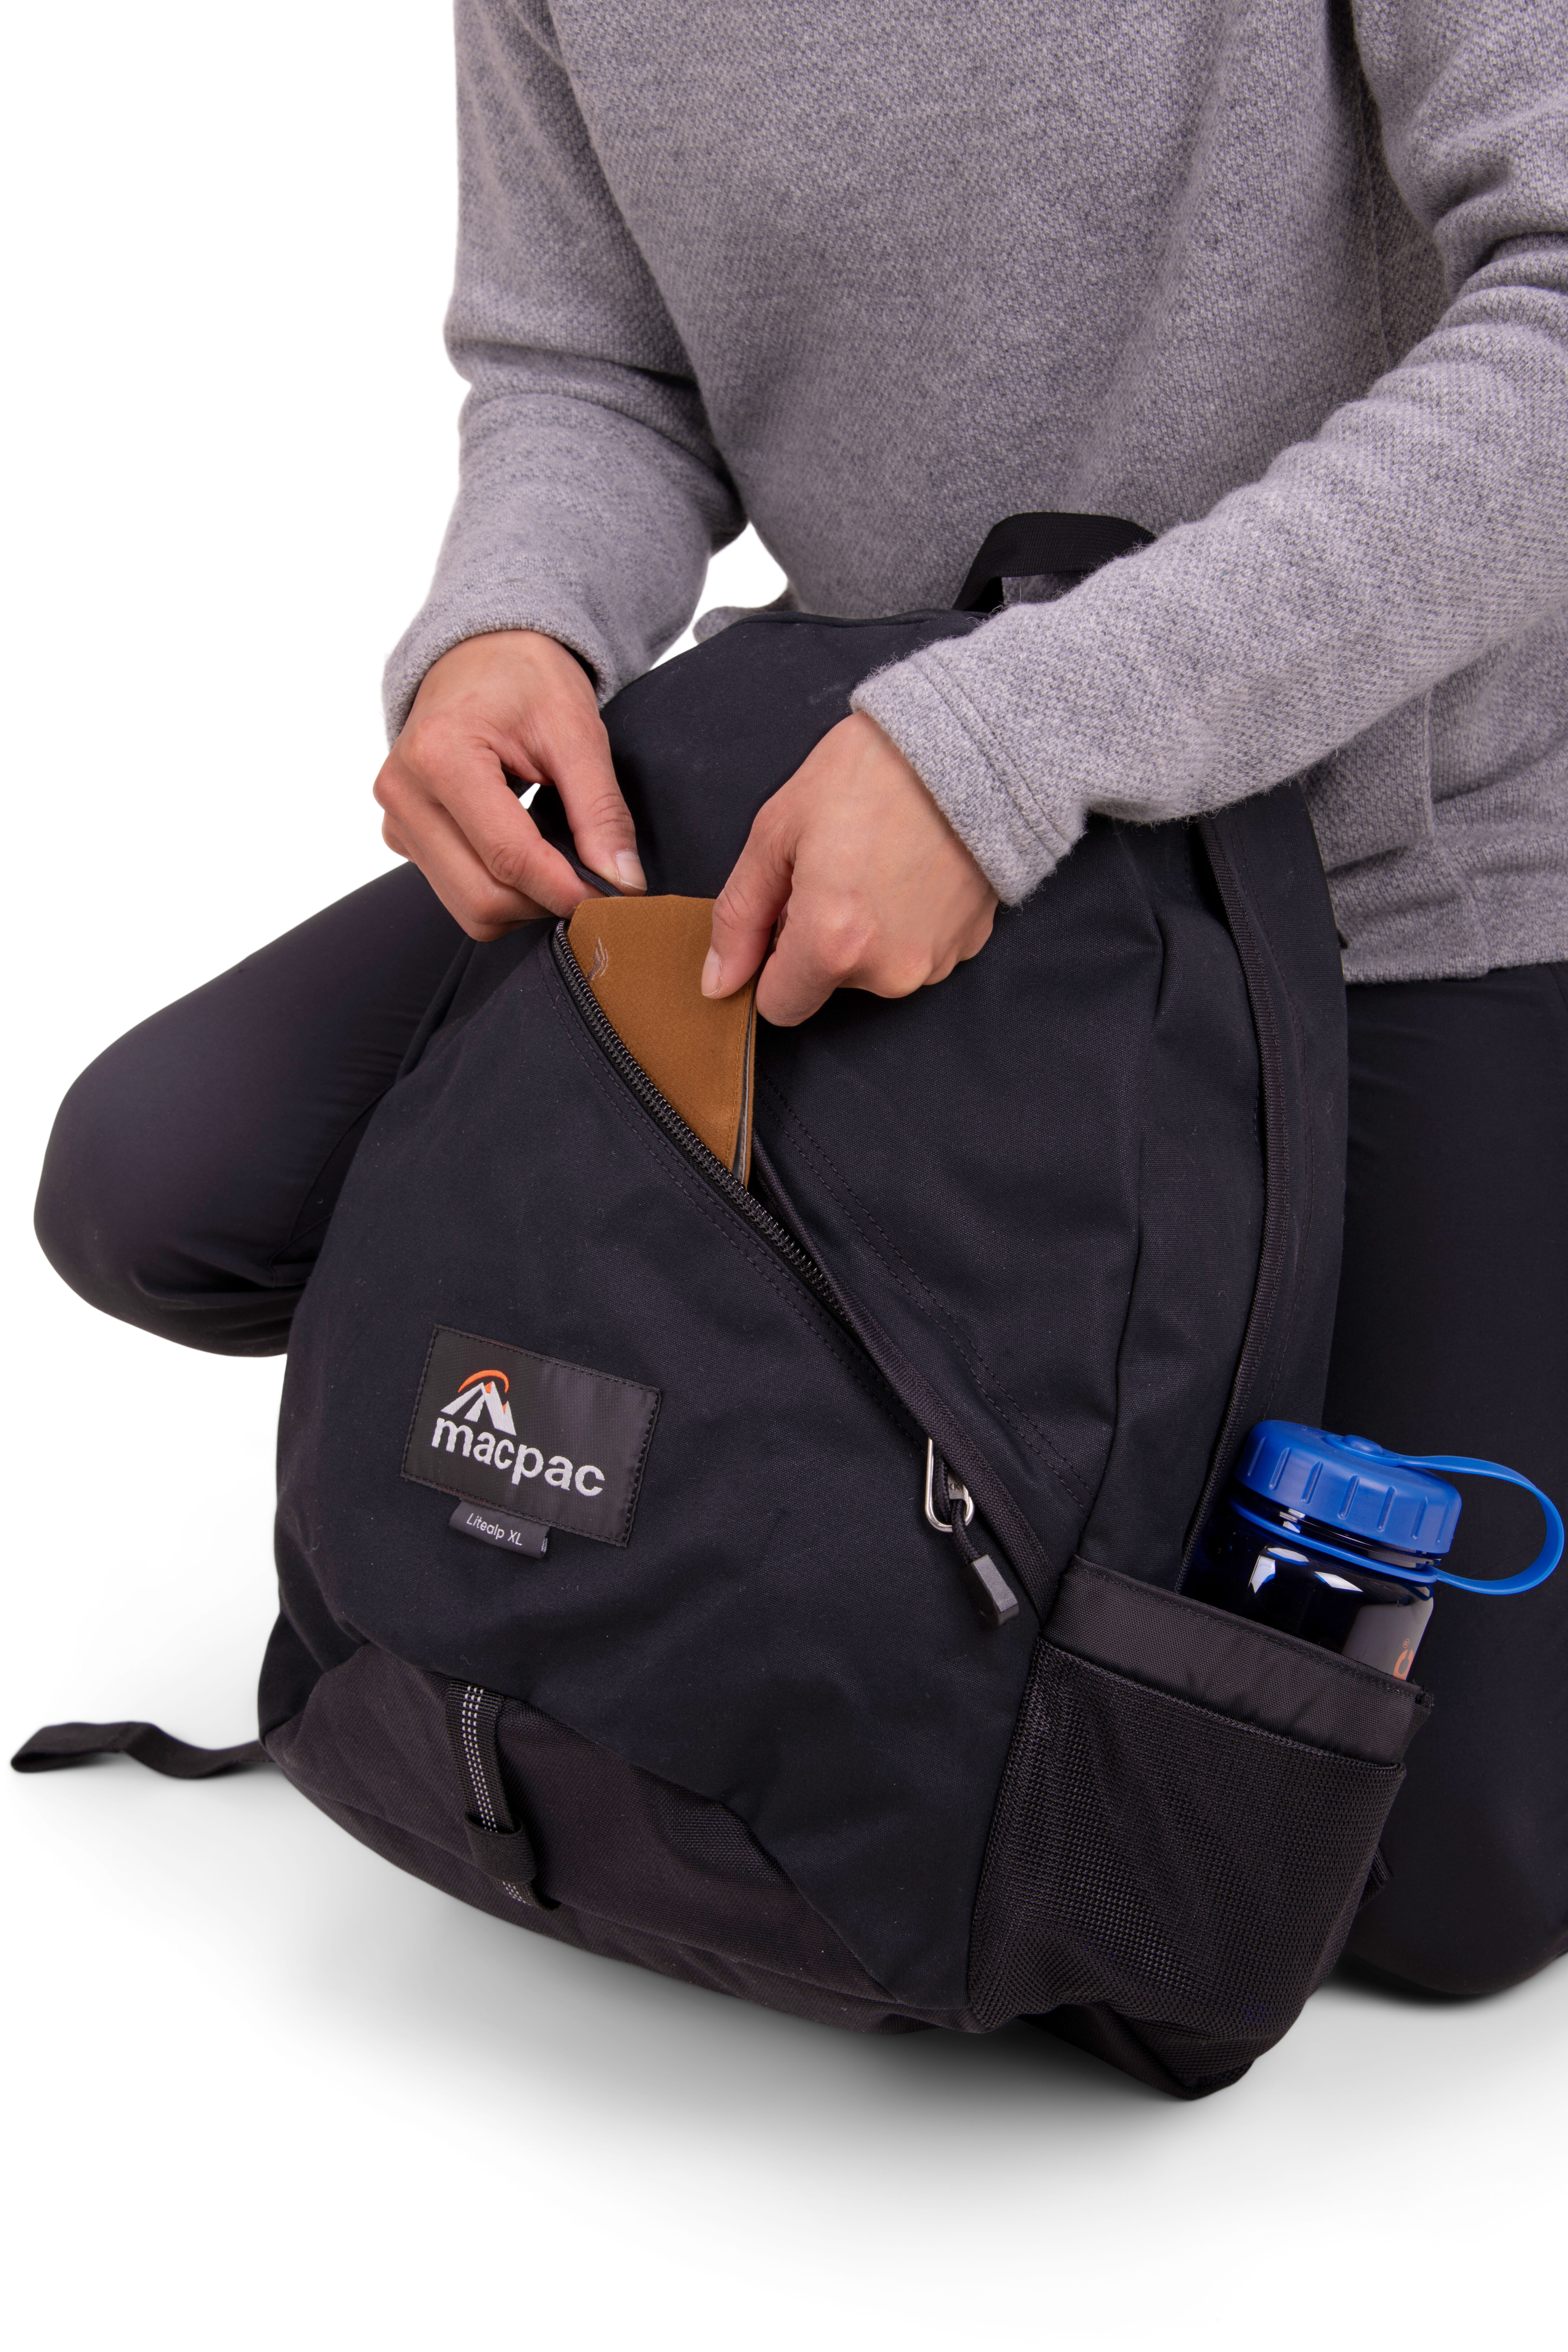 Macpac Litealp 30L AzTec® Backpack | Macpac